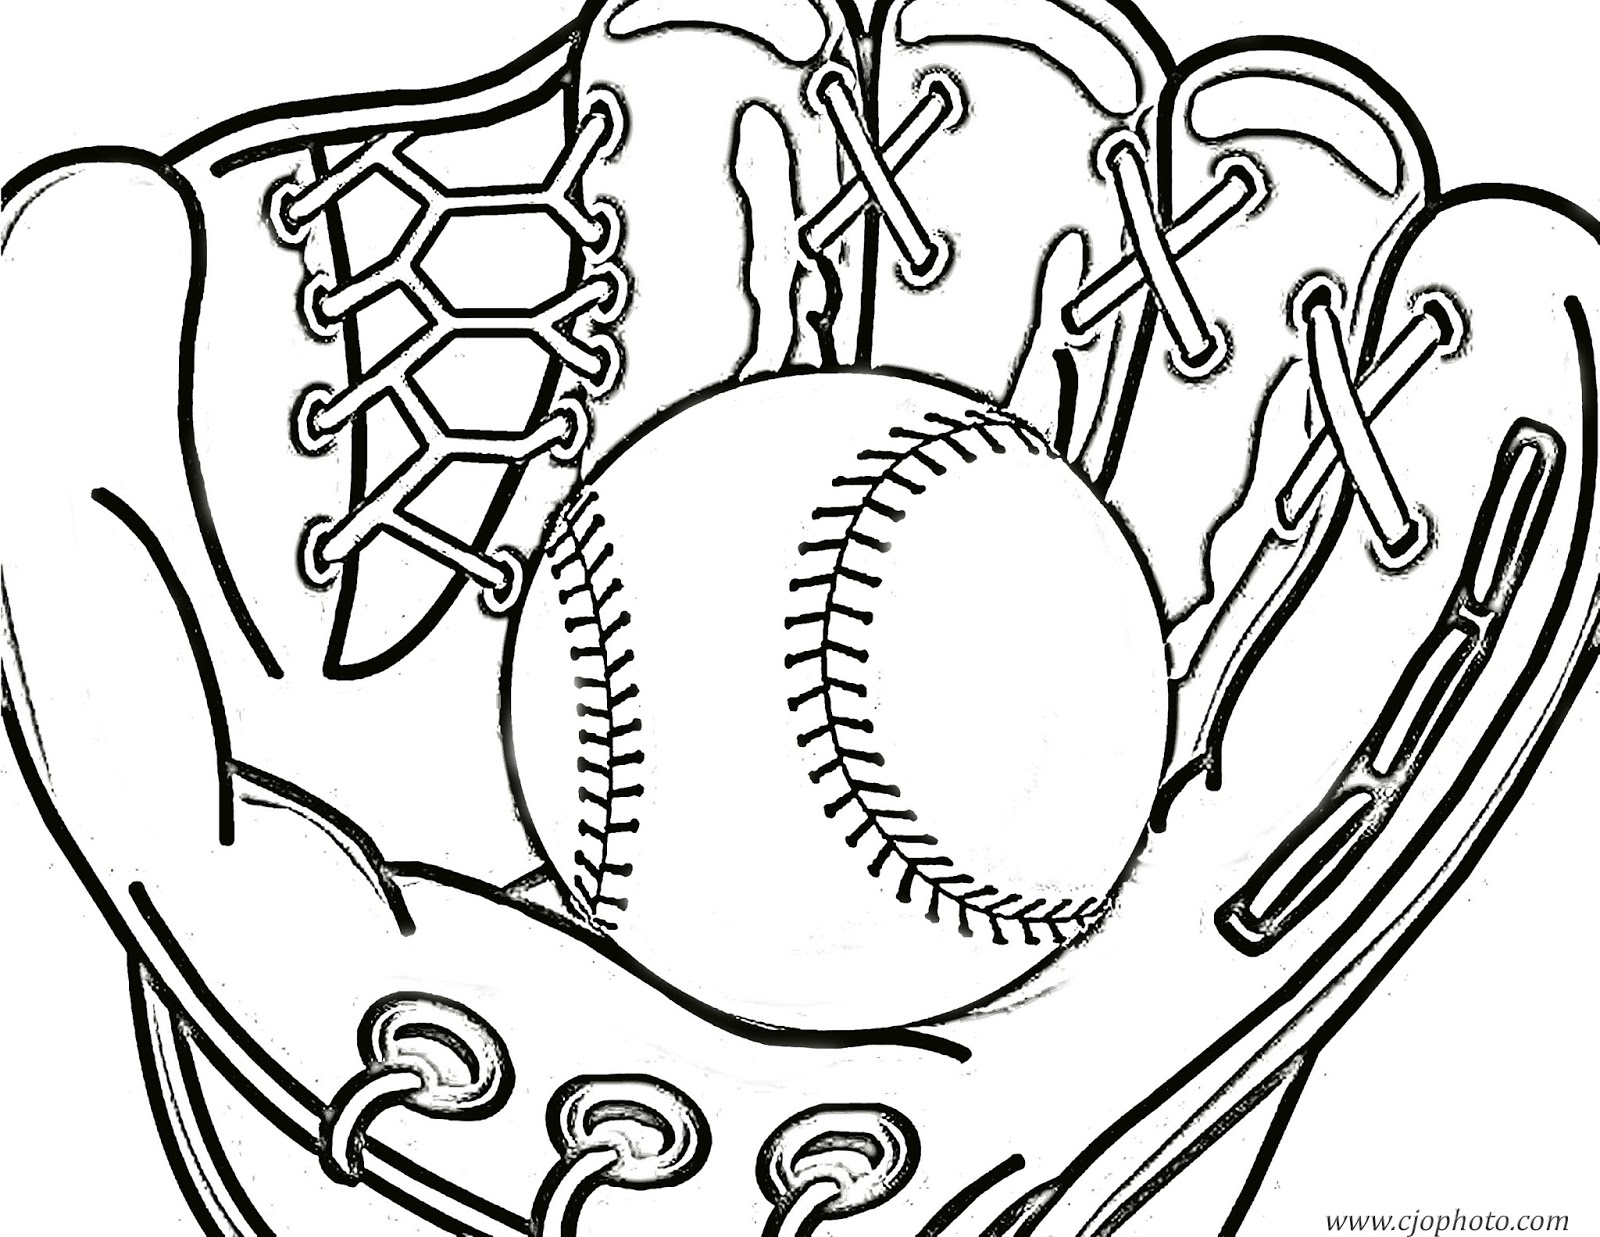 CJO Photo: Baseball Coloring Page